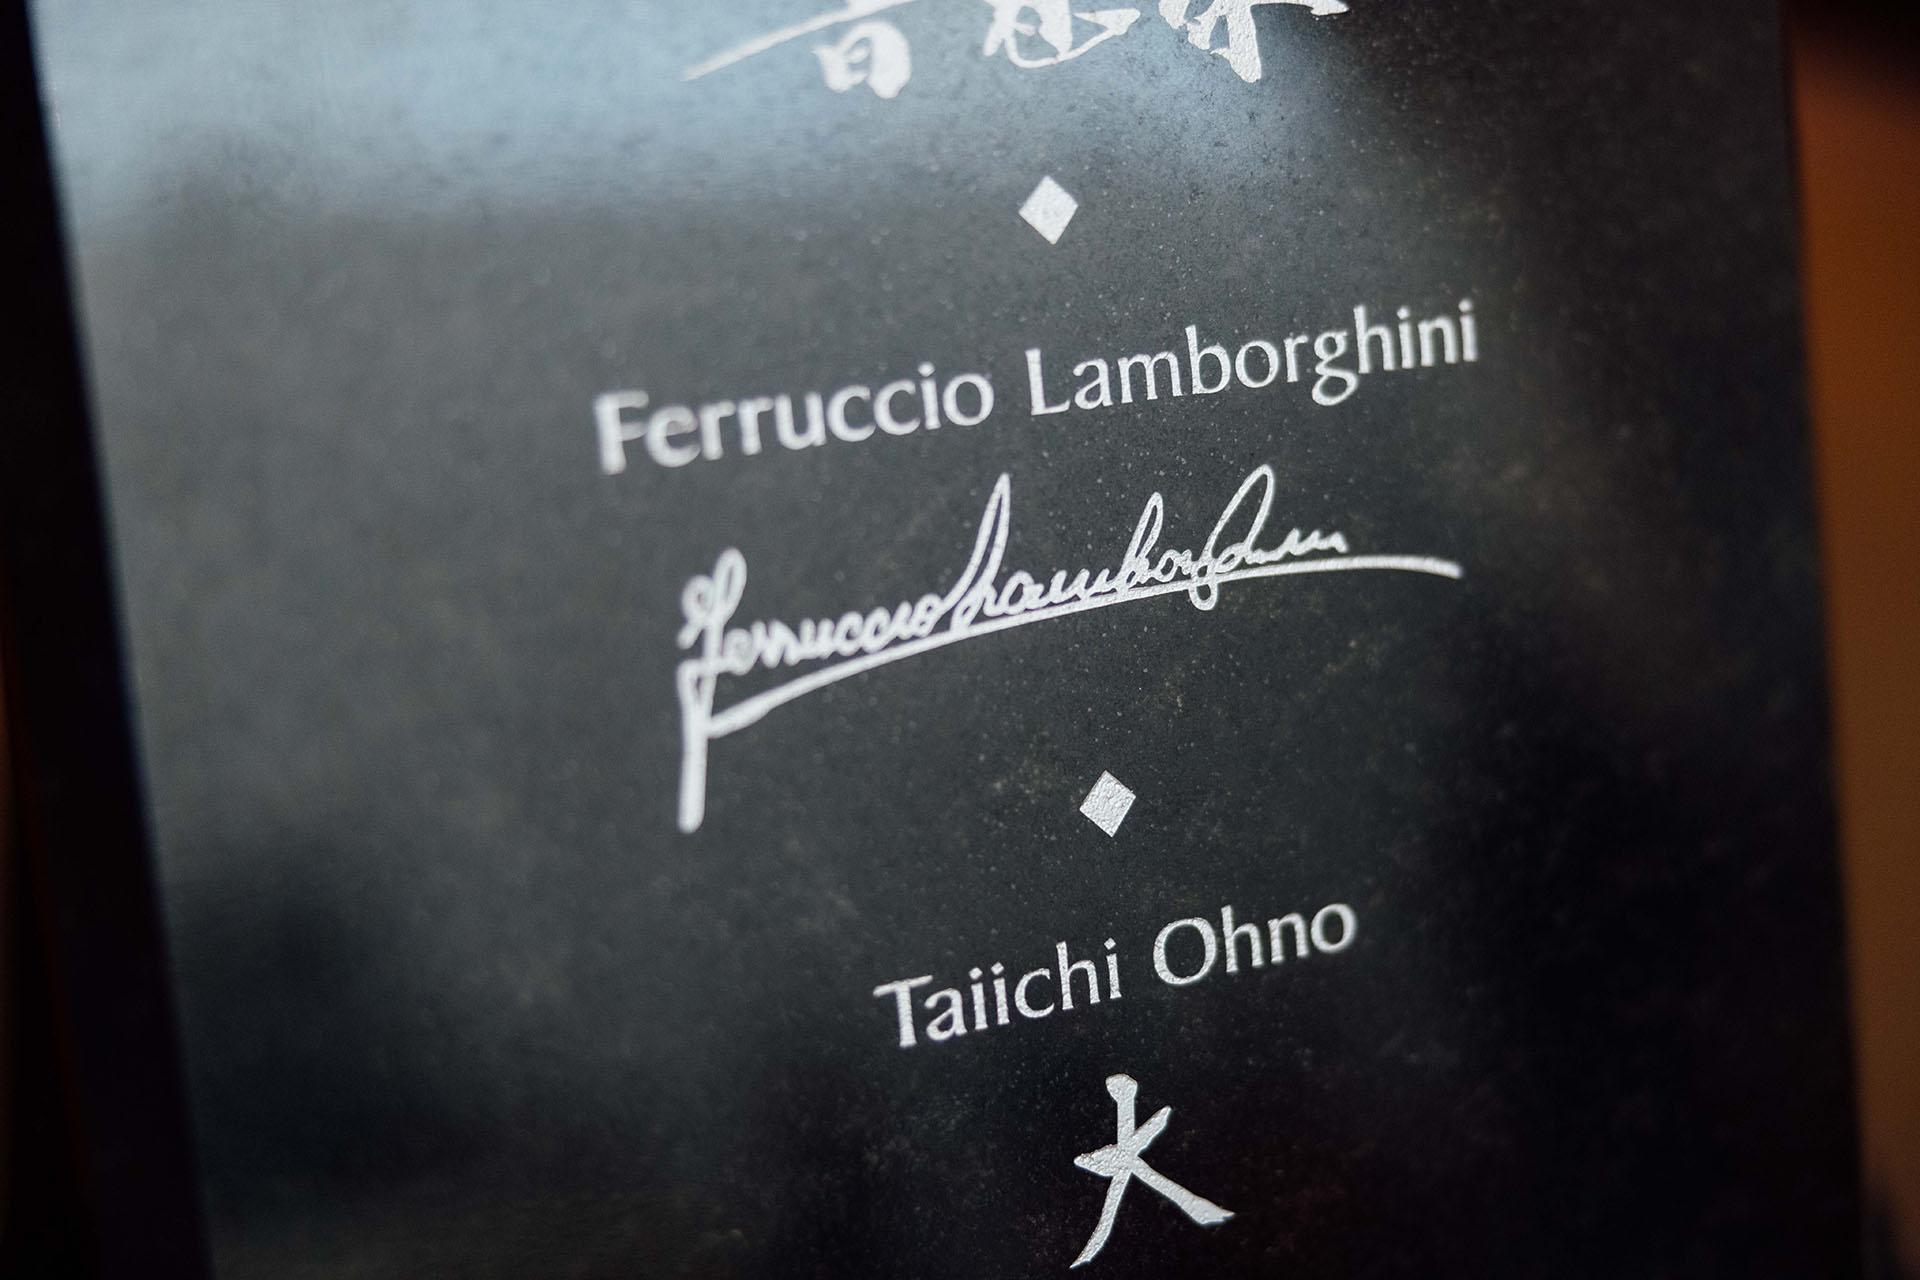 Ferruccio lamborghini into automotive hall of fame 4